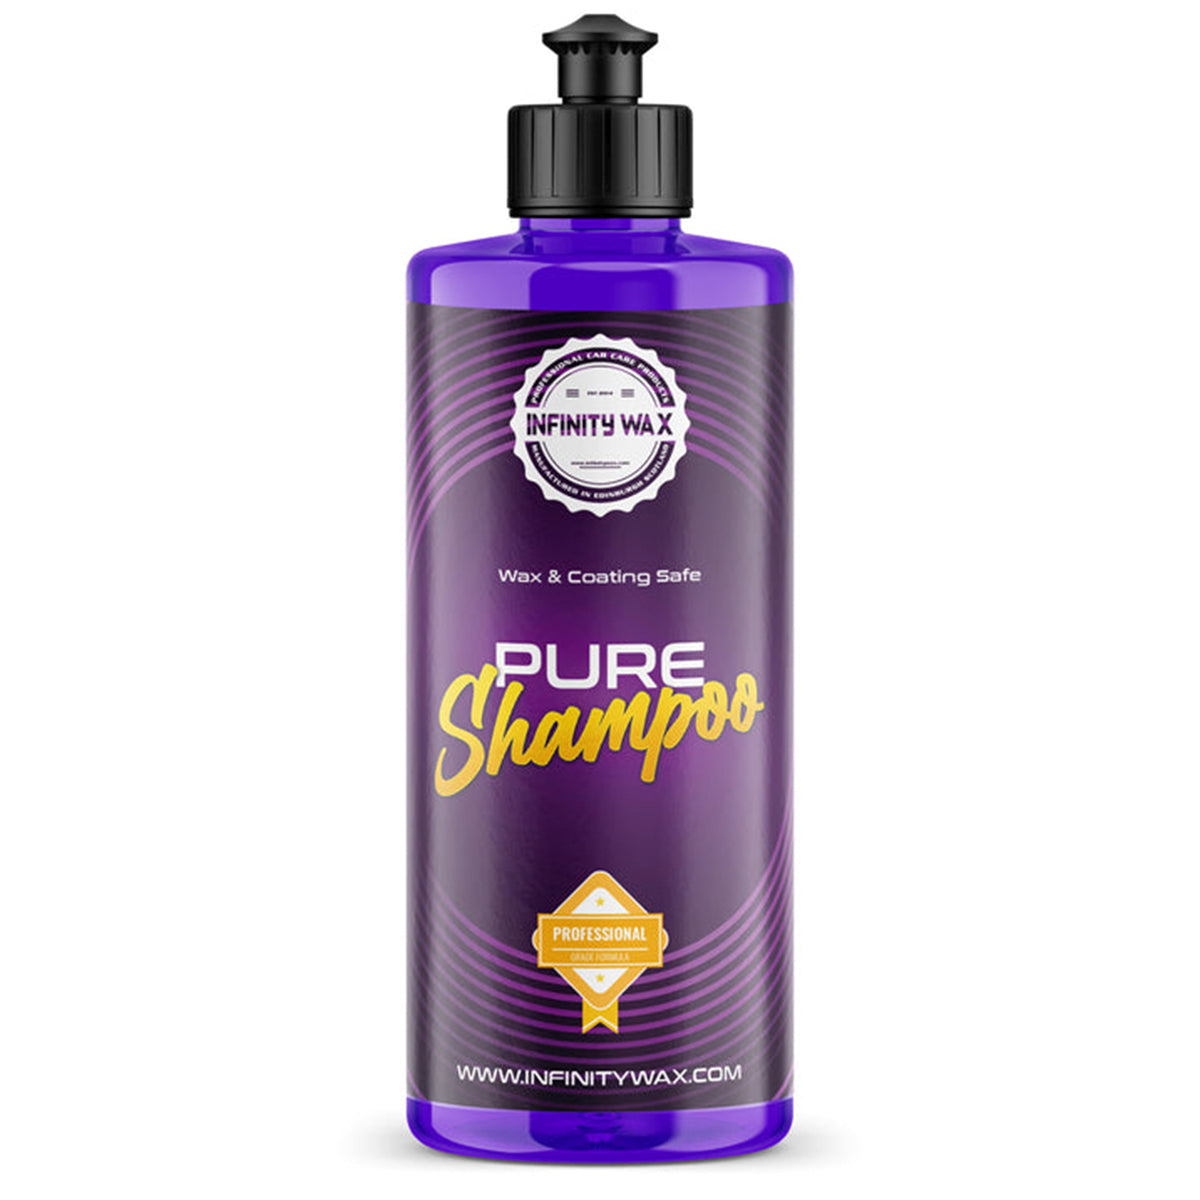 Infinity Wax Pure Shampoo